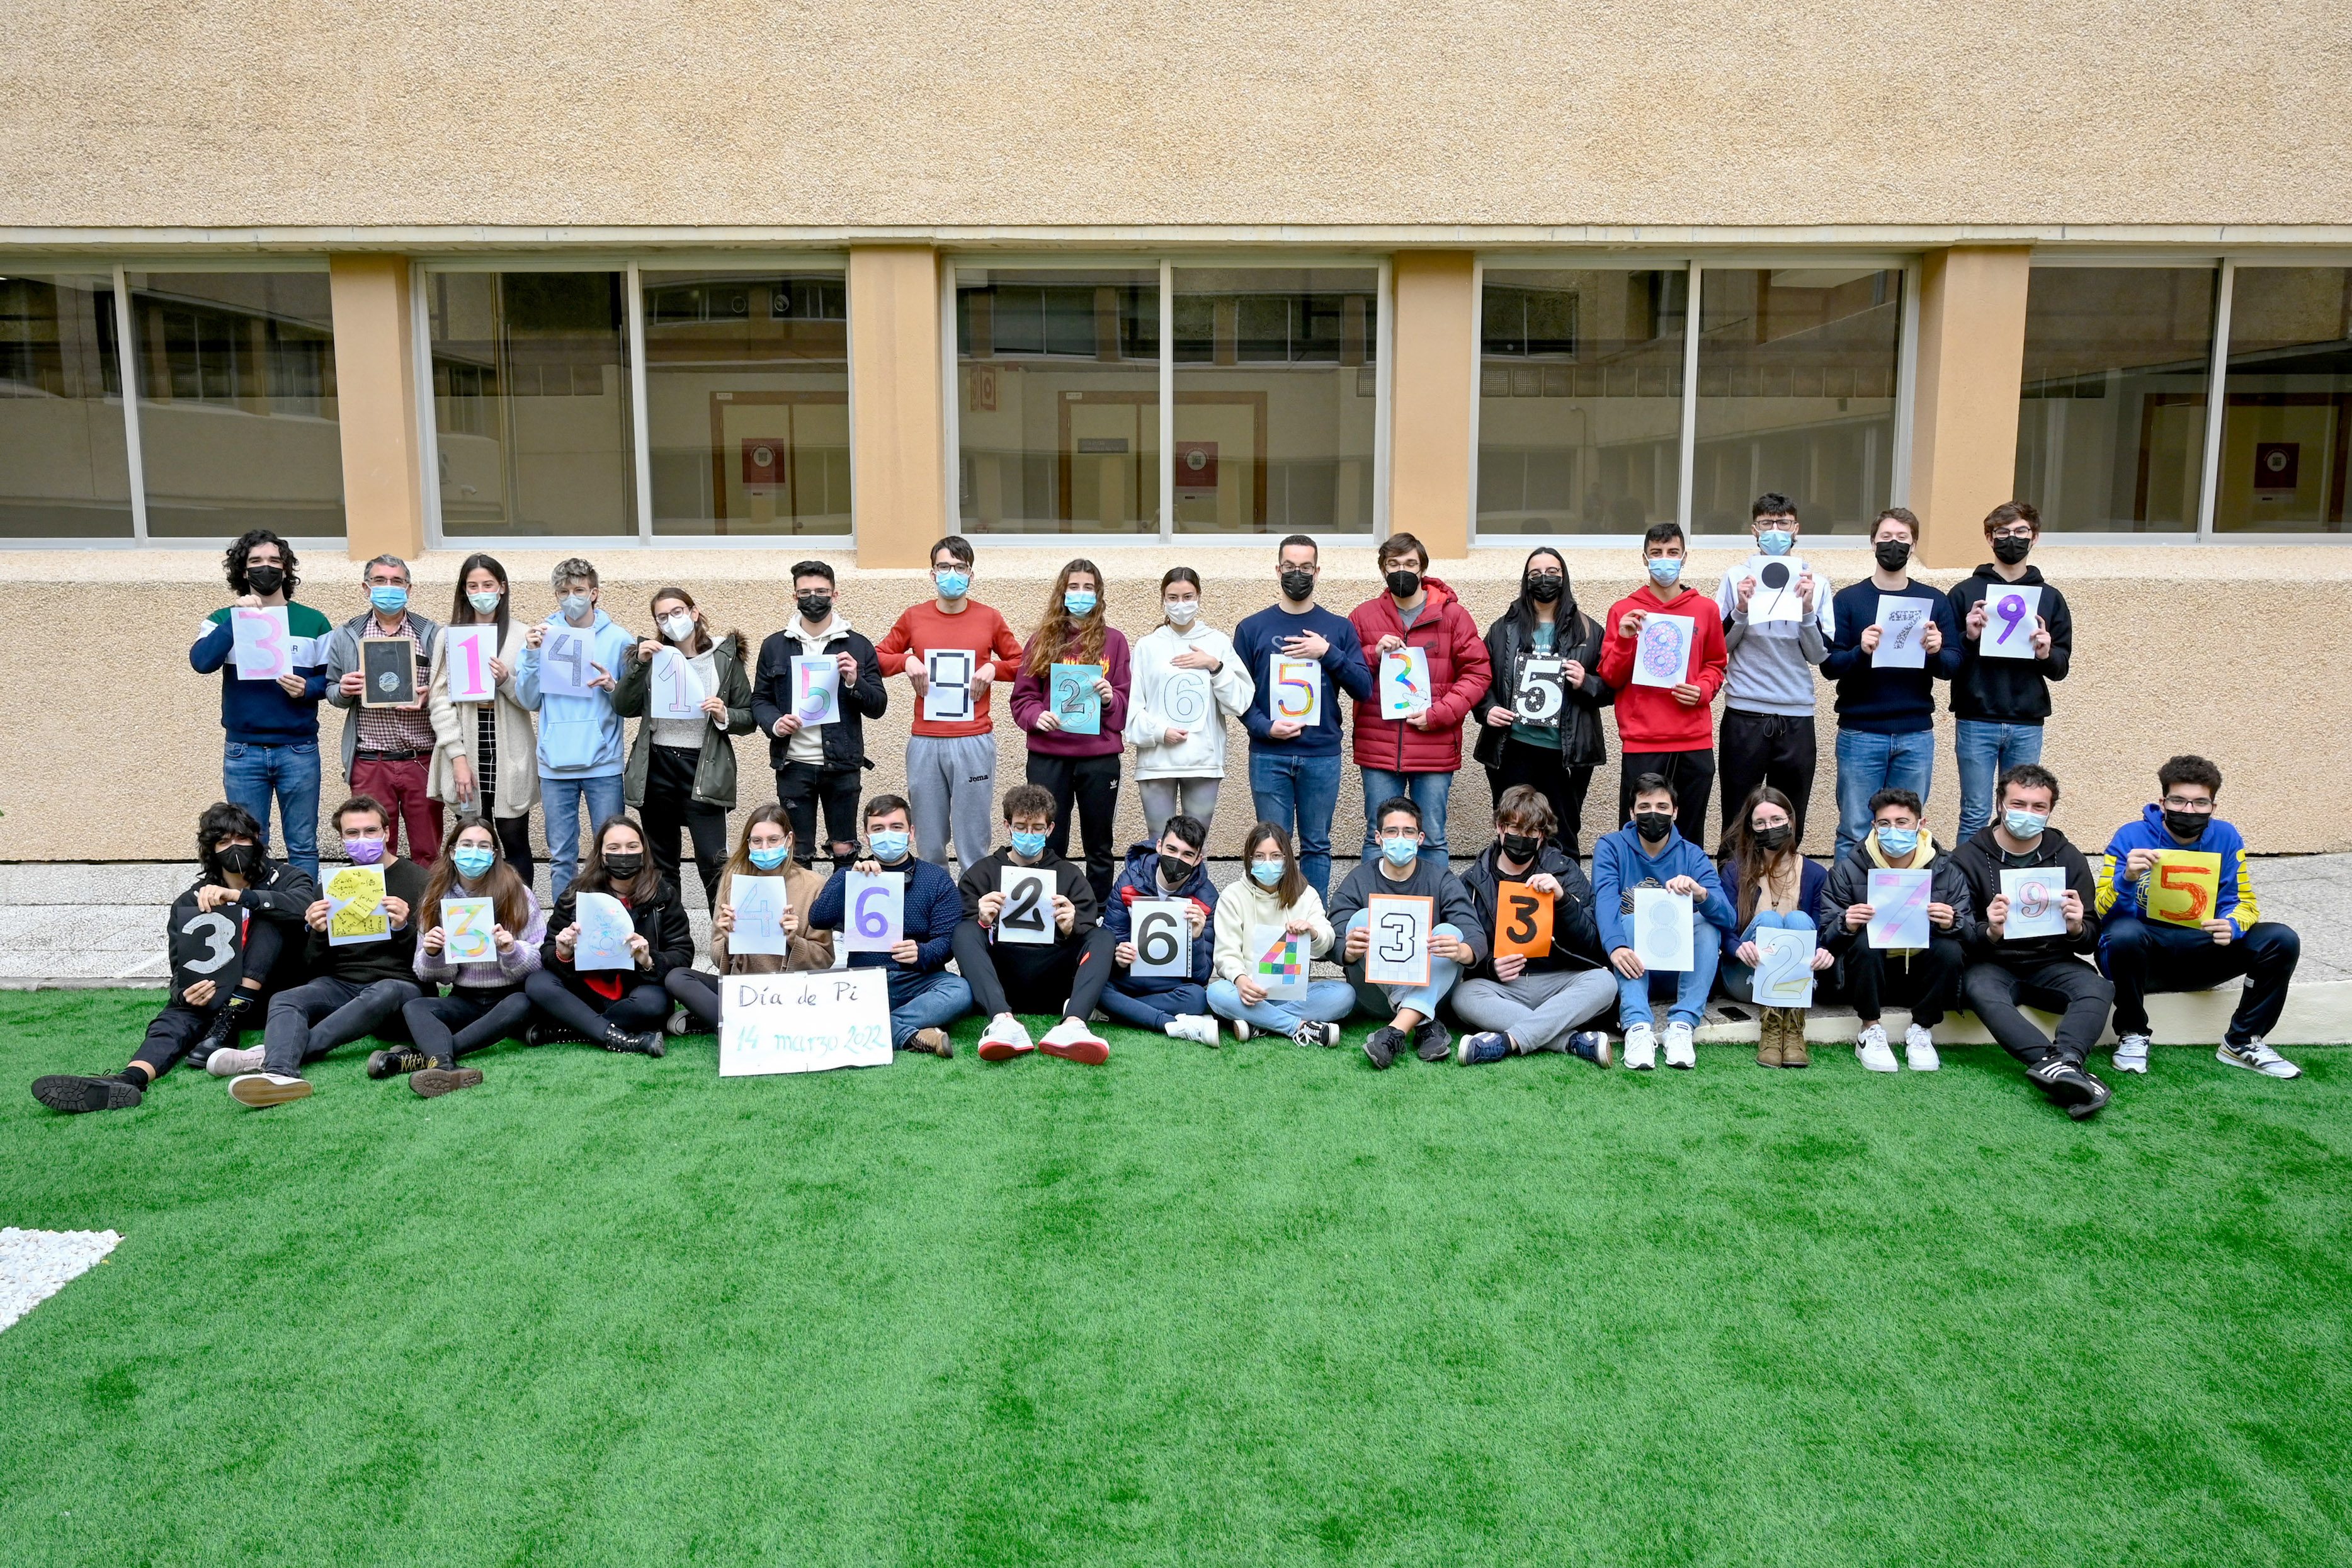 Los alumnos de Física conmemorando el Día de Pi